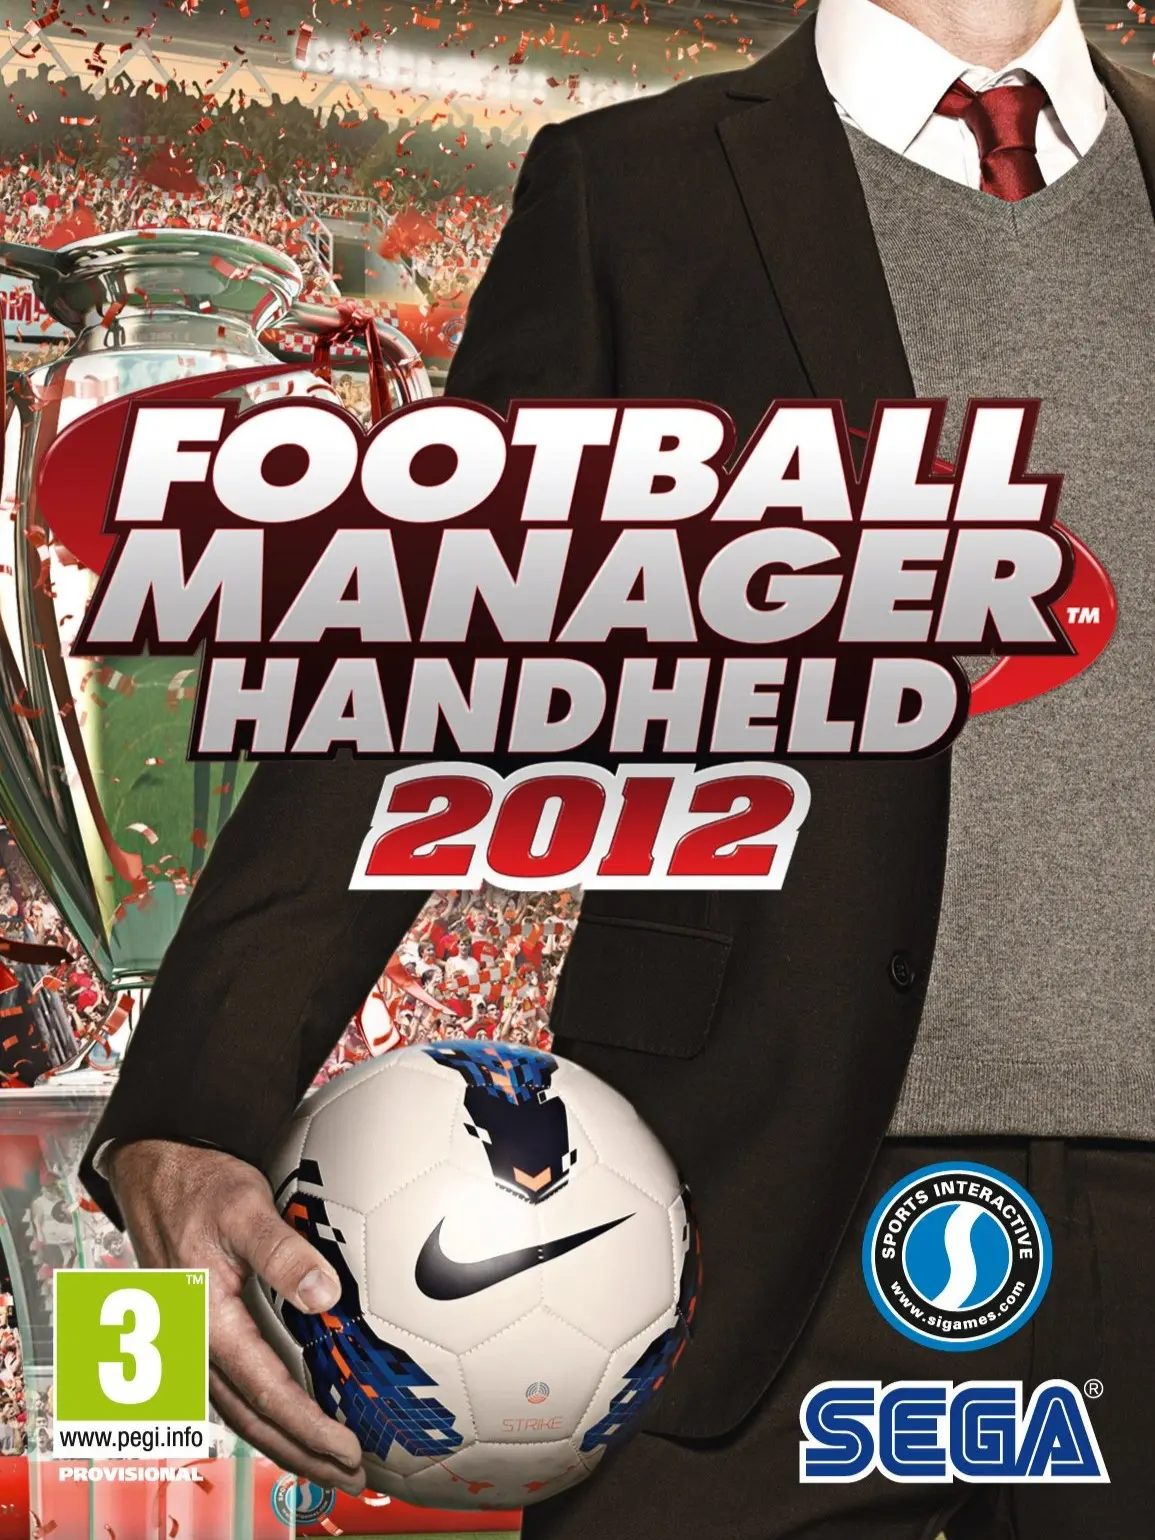 Football Manager 2012 (EU) (PC) - Steam - Digital Code